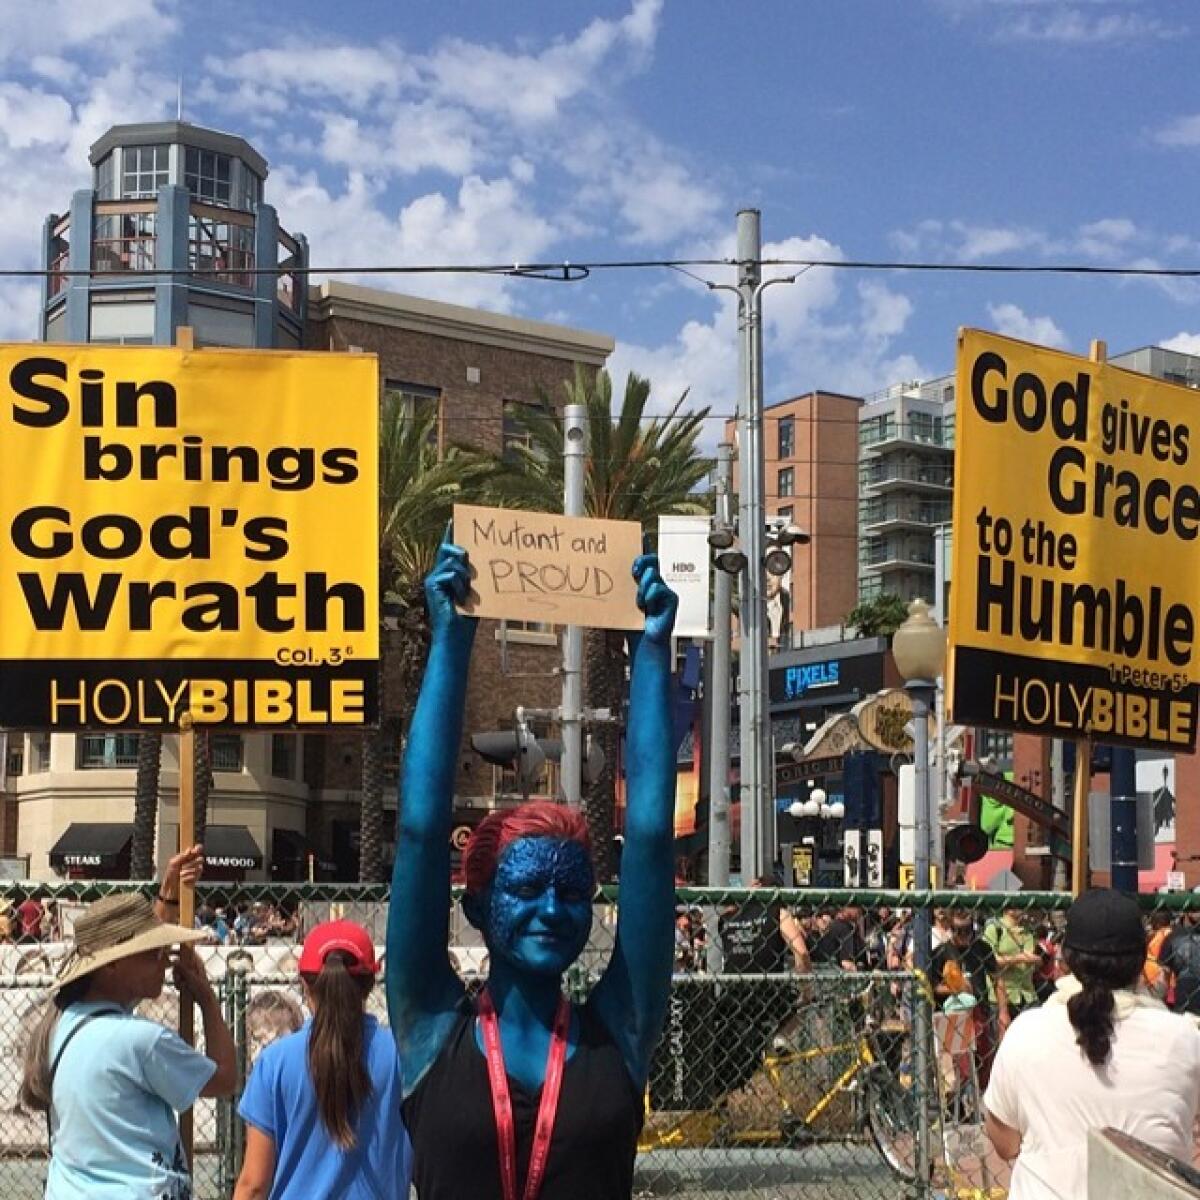 Une participante au Comic-Con brandit une pancarte "Mutante et fière", pour se moquer des manifestants chrétiens.